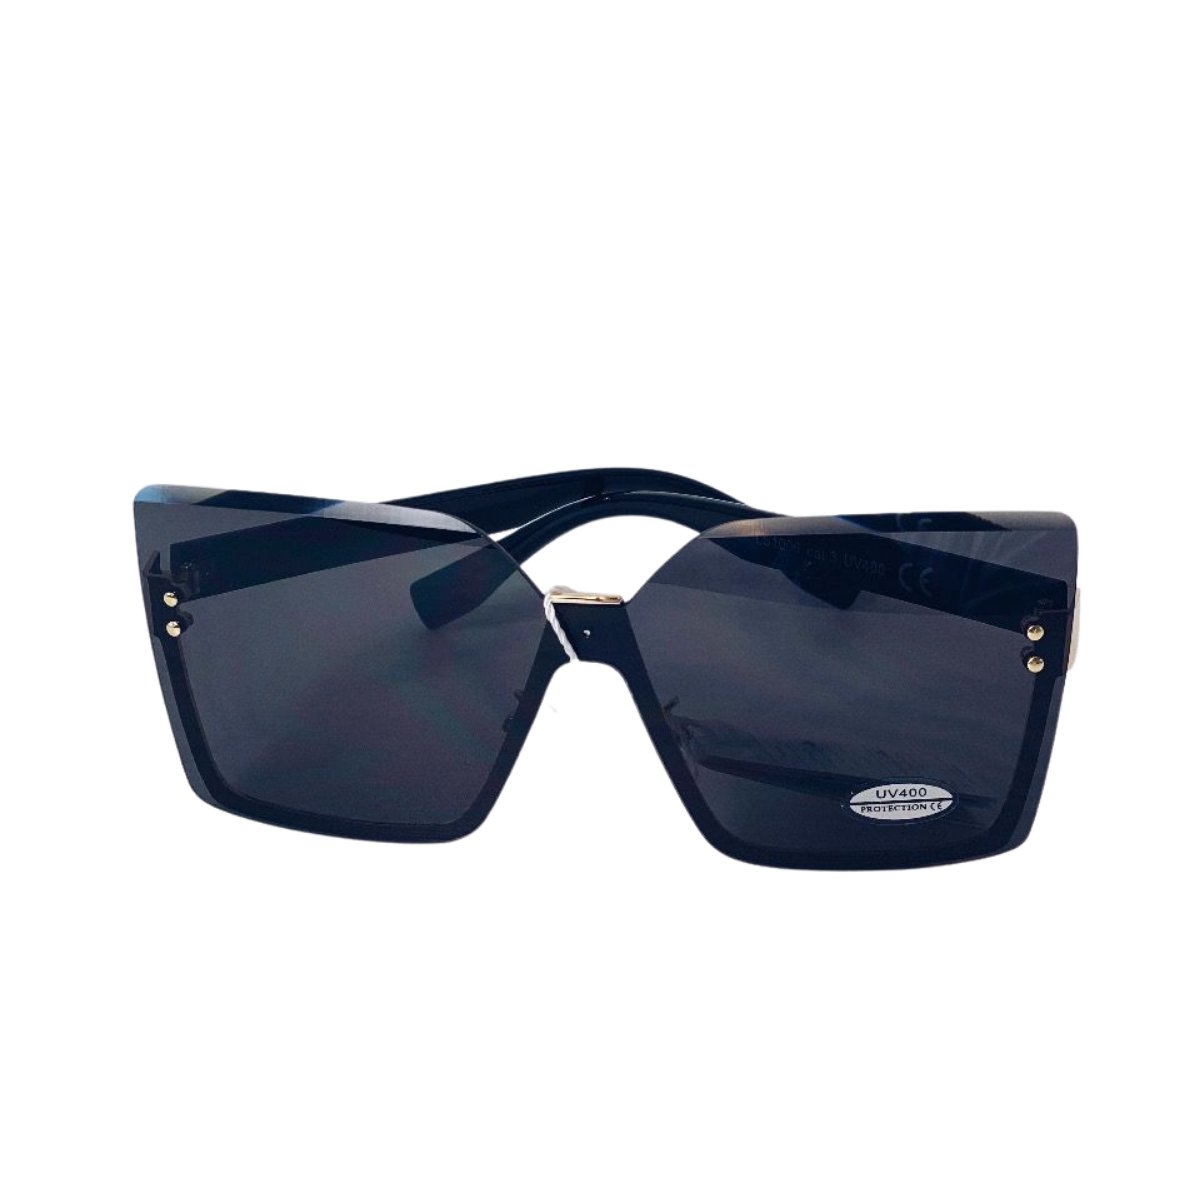 Dames Zonnebril - Zonnebrillen - Hoge randen met metaal - Vierkante versie - UV4000 - Zwart